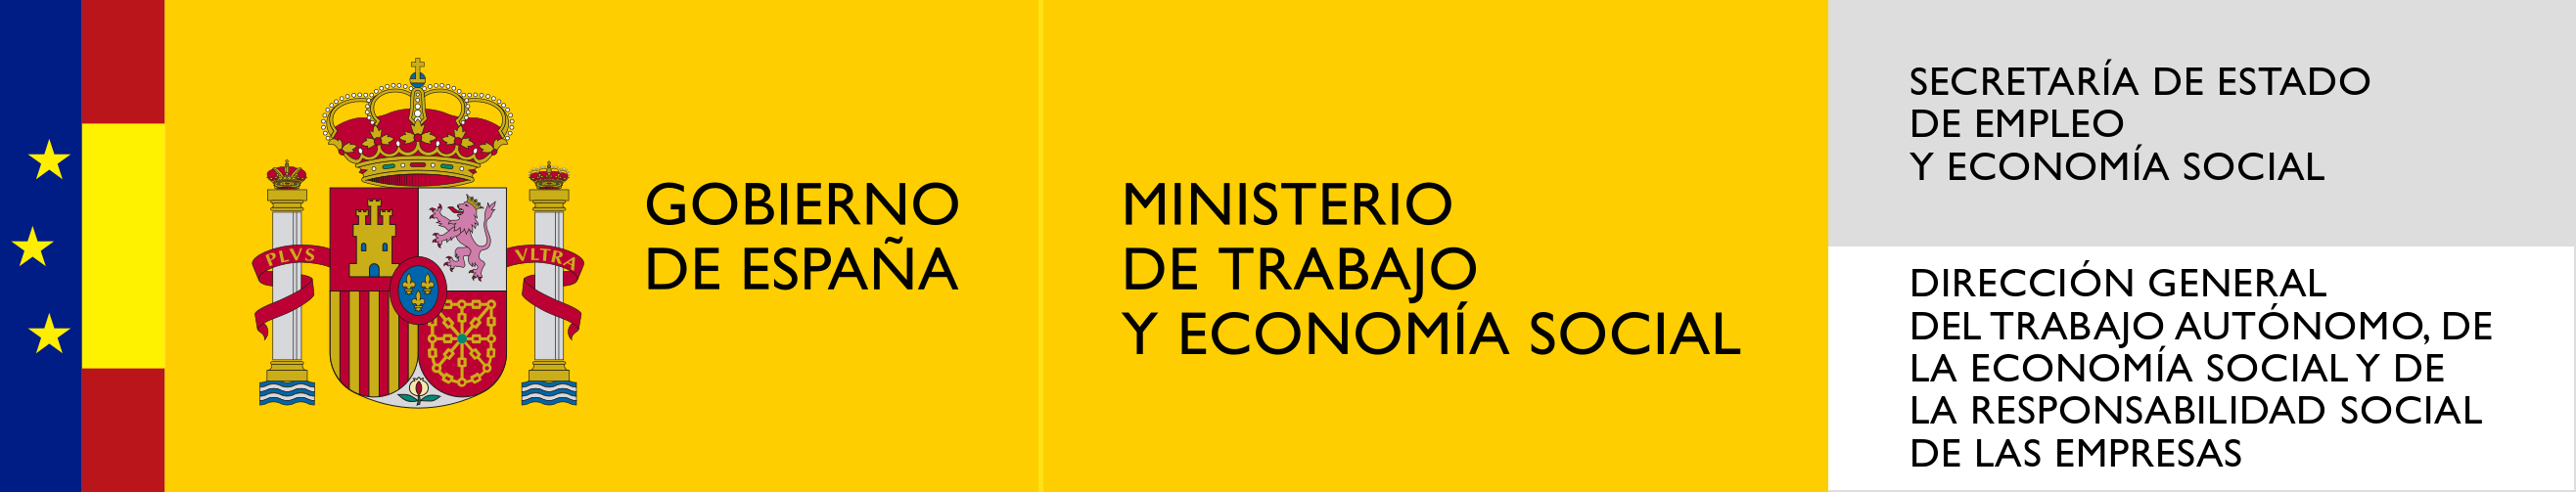 Logotipo Ministerio de Trabajo y Economía Social